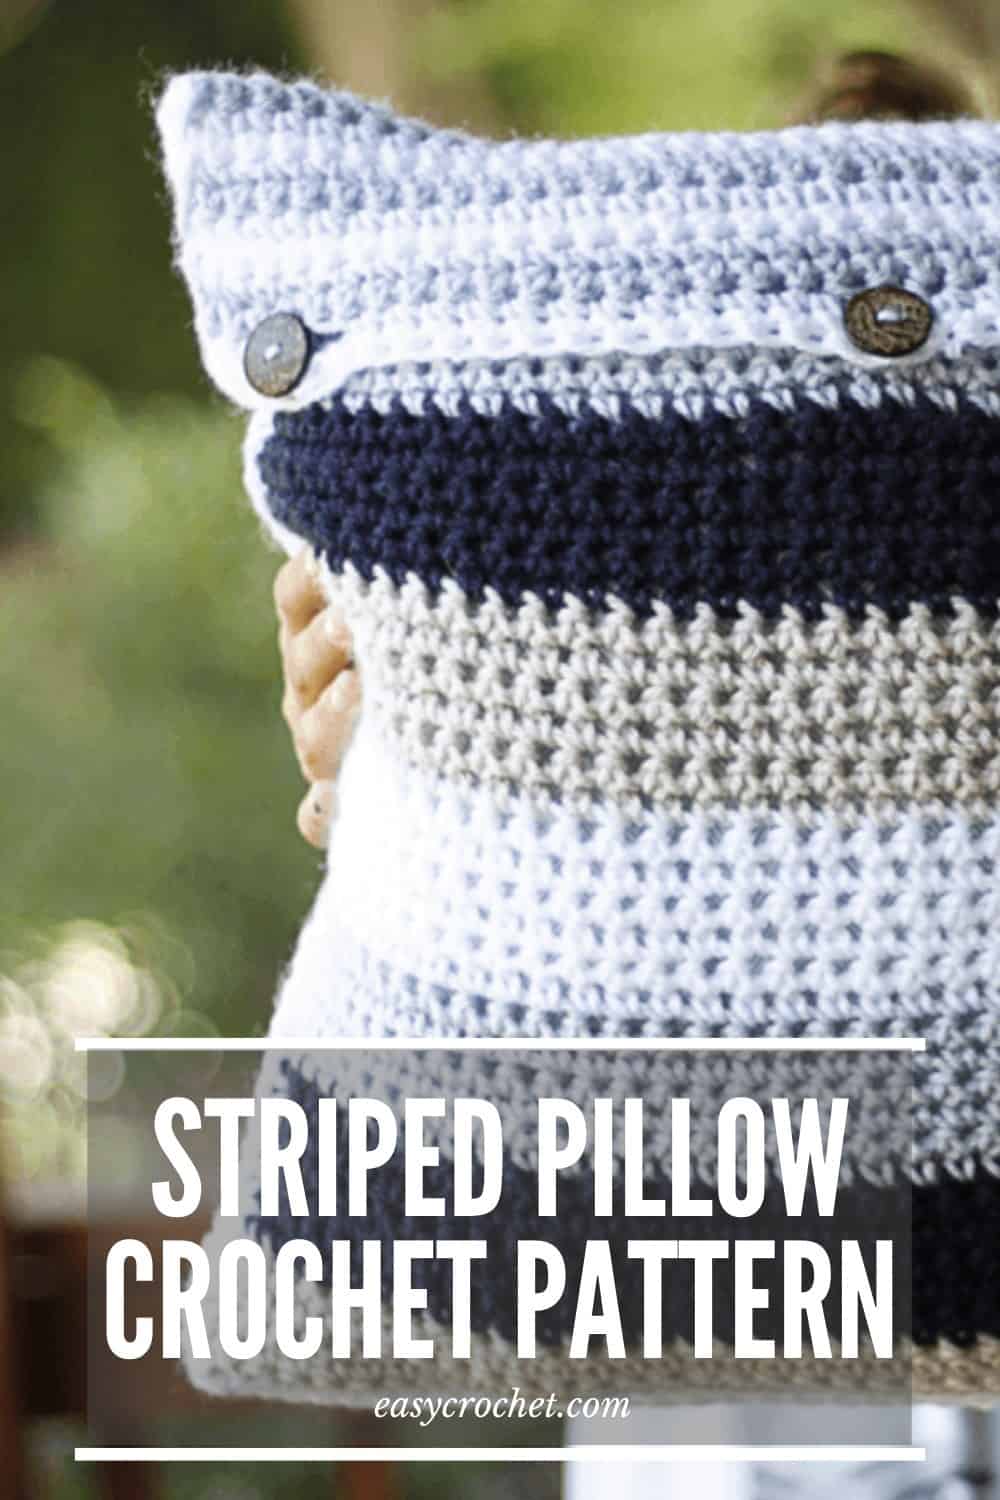 Striped Pillow Crochet Pattern - Free Crochet Pattern from Easy Crochet via @easycrochetcom